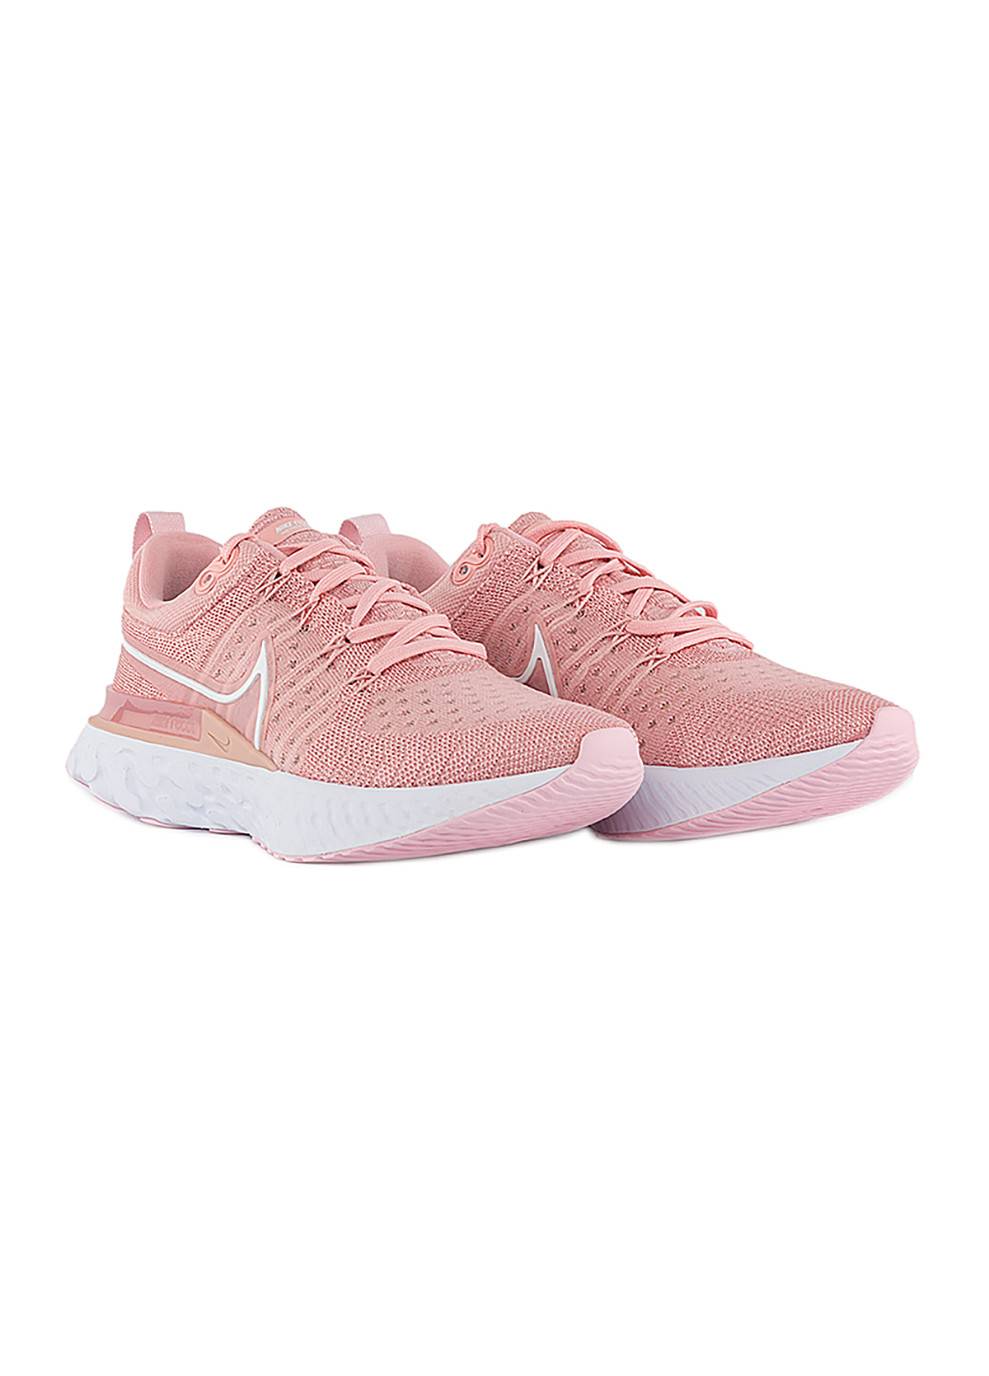 Розовые демисезонные женские кроссовки w react infinity run fk 2 розовый Nike